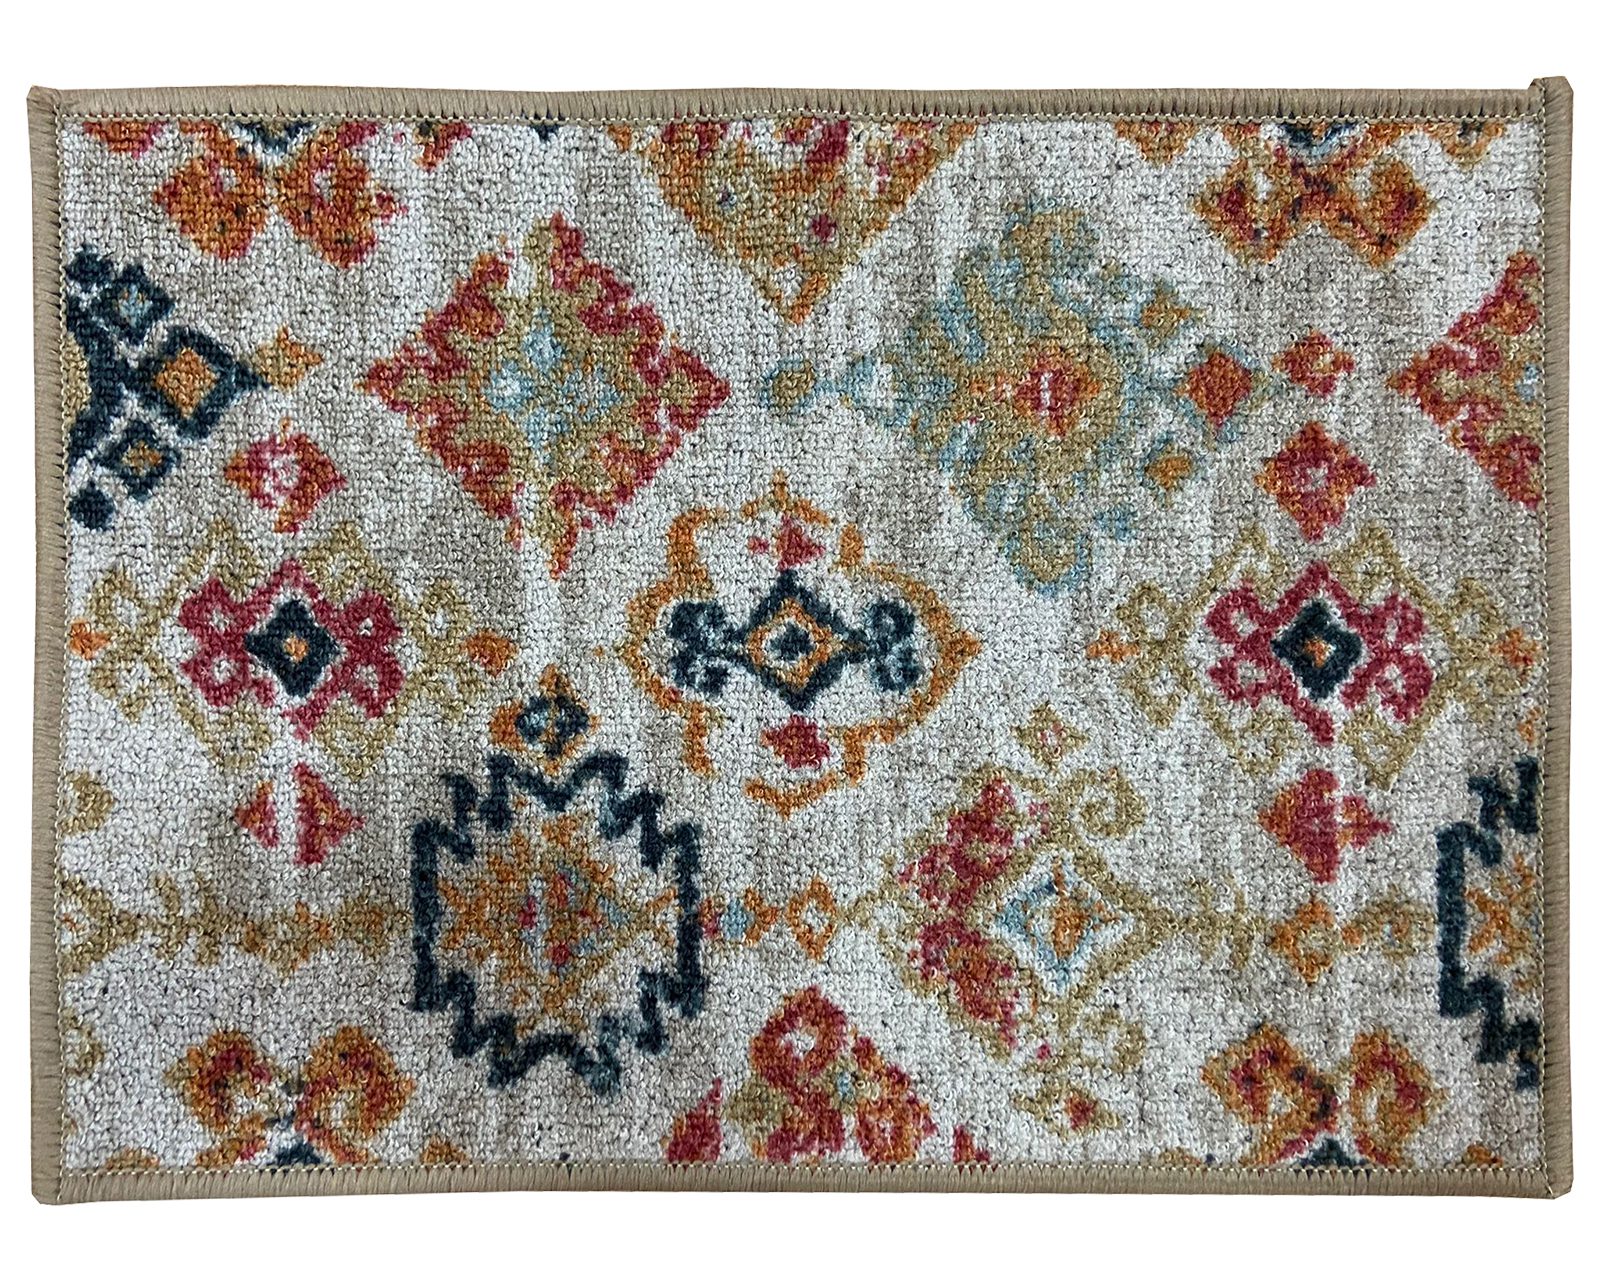 Alfombras baratas de altísima calidad: encuentra tu alfombra en